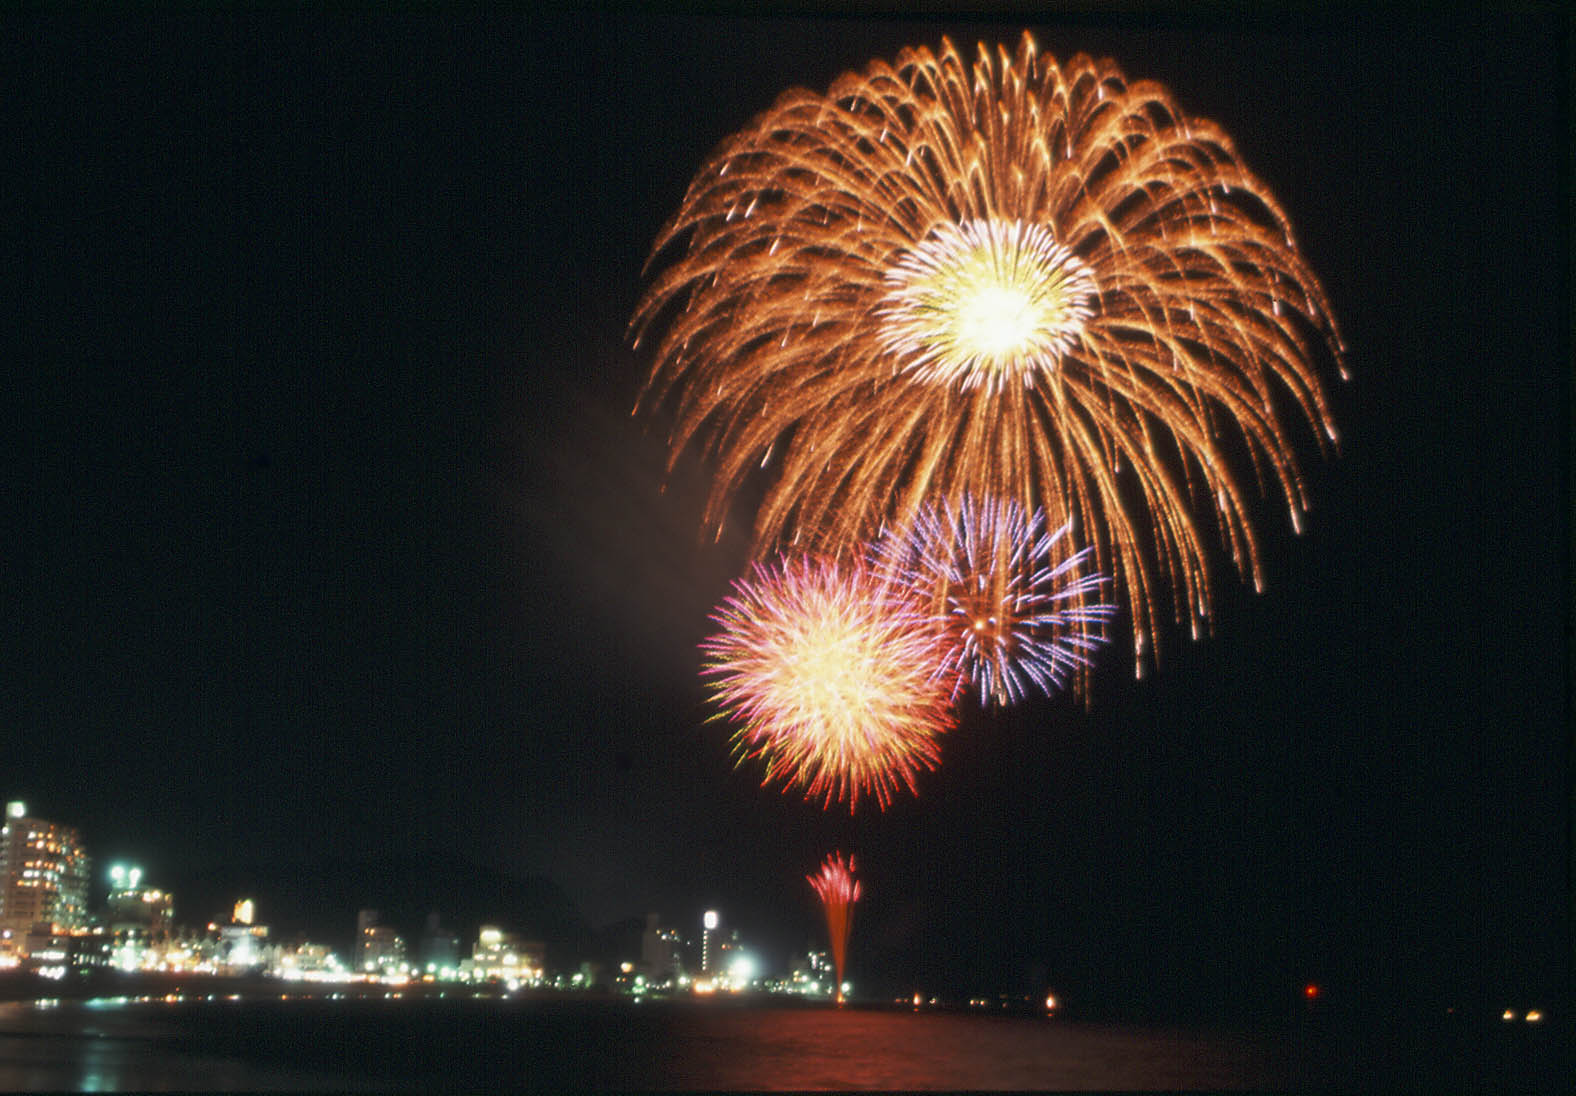 Utsumi Meitere Fireworks Festival